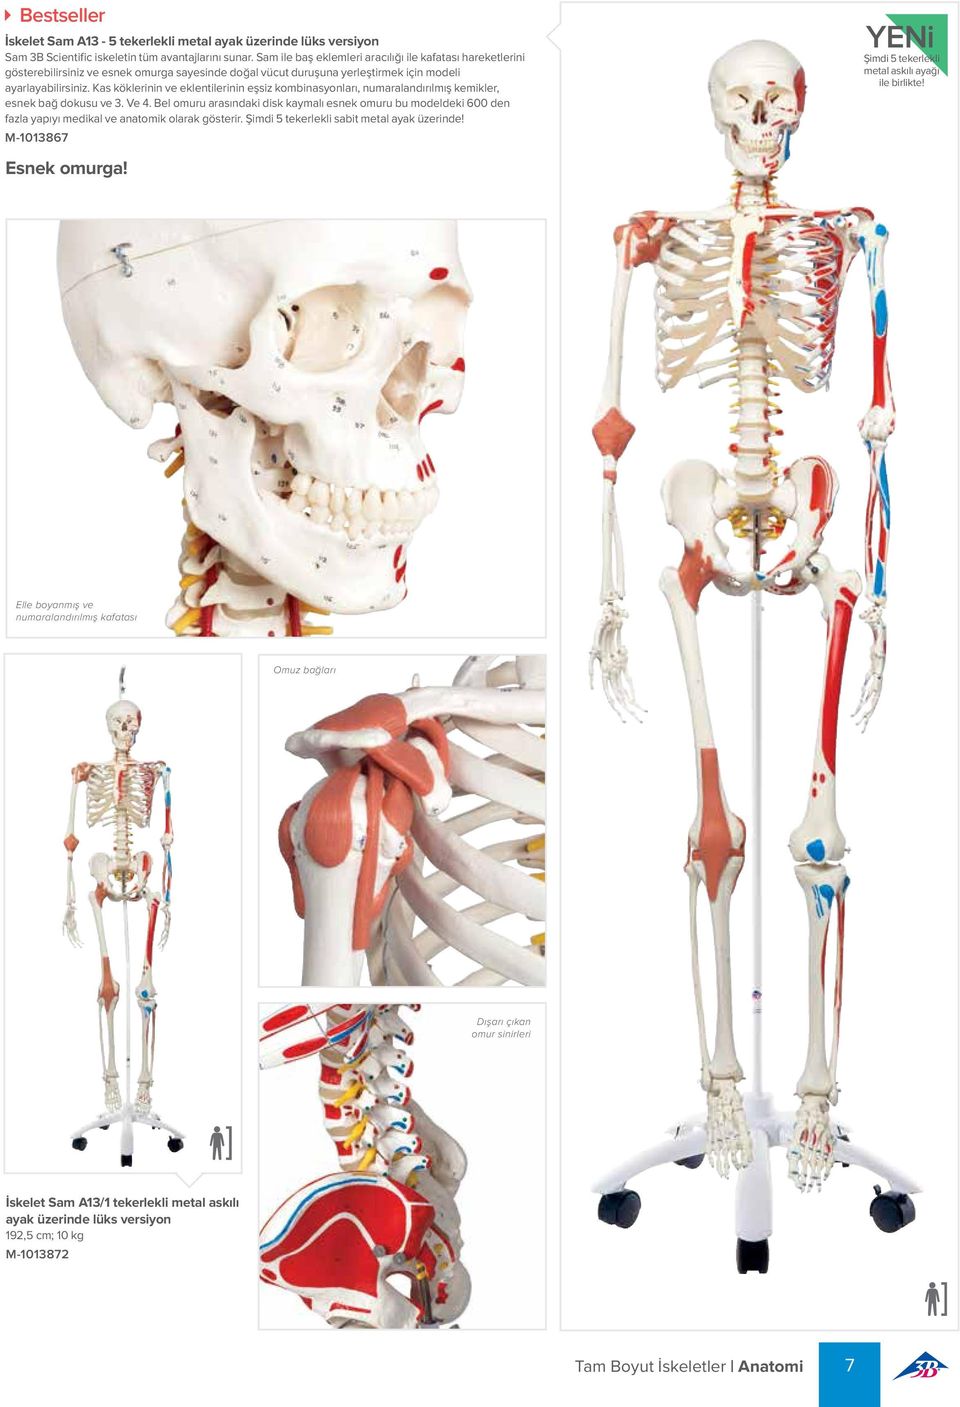 Kas köklerinin ve eklentilerinin eşsiz kombinasyonları, numaralandırılmış kemikler, esnek bağ dokusu ve 3. Ve 4.